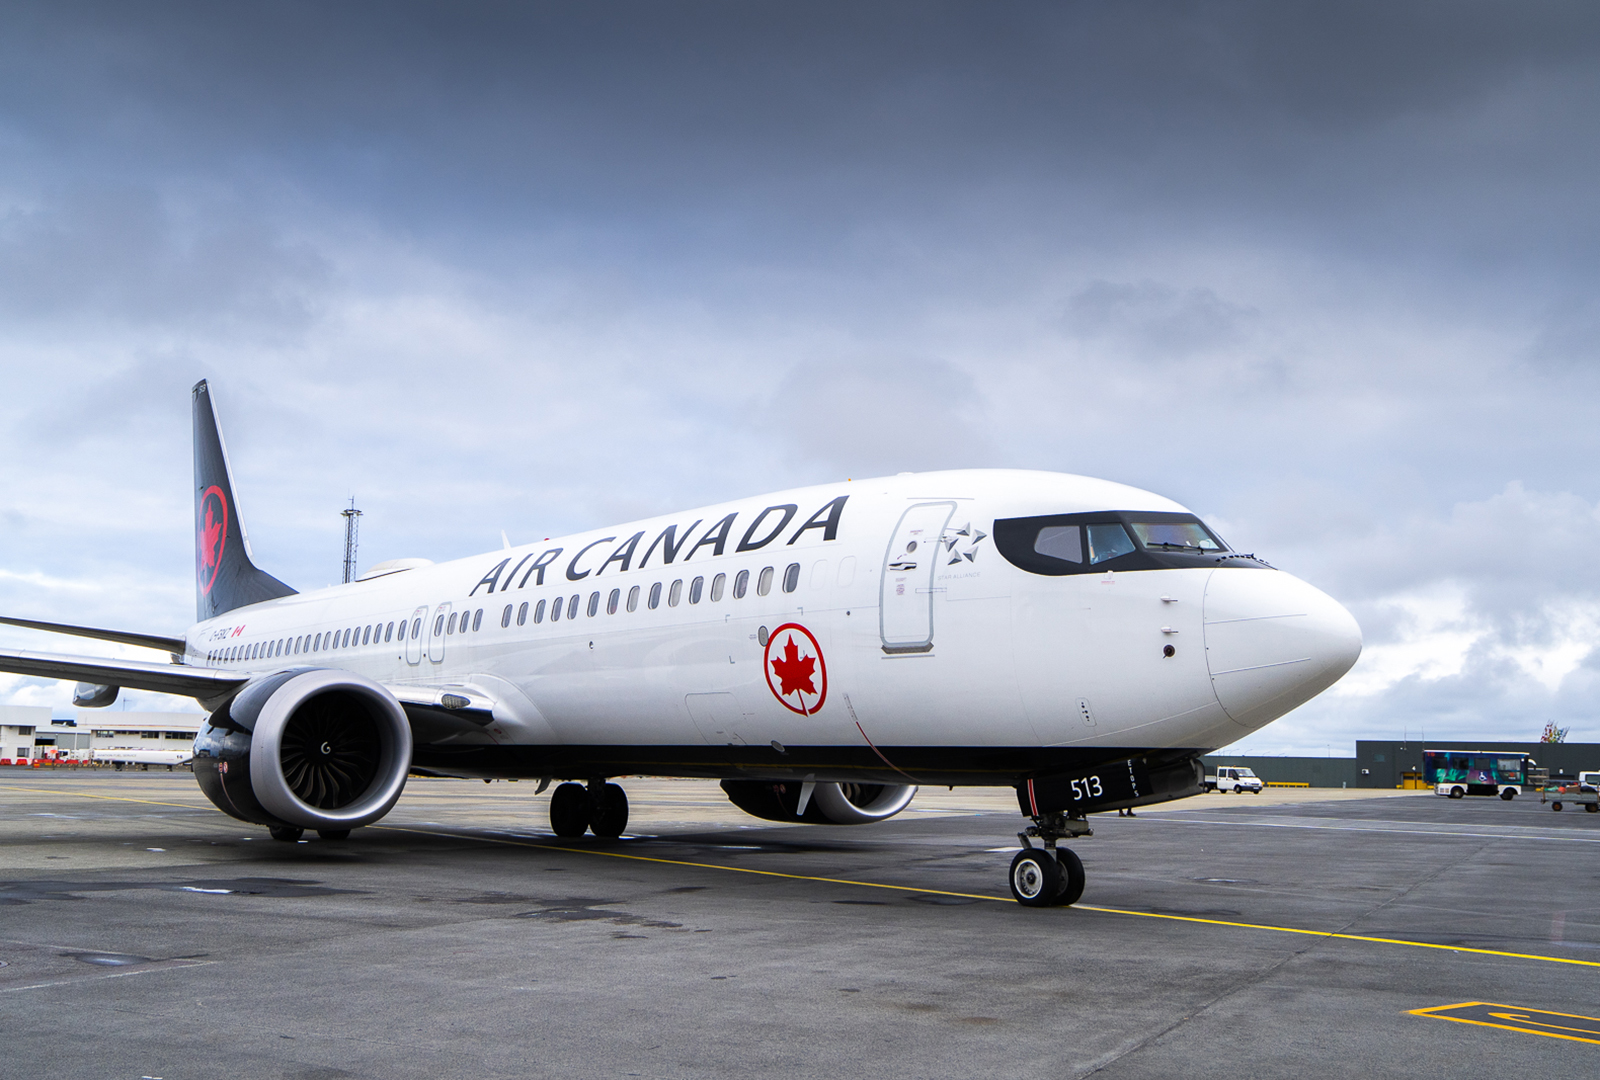 Air Canada flýgur frá Keflavík til Toronto og Montreal